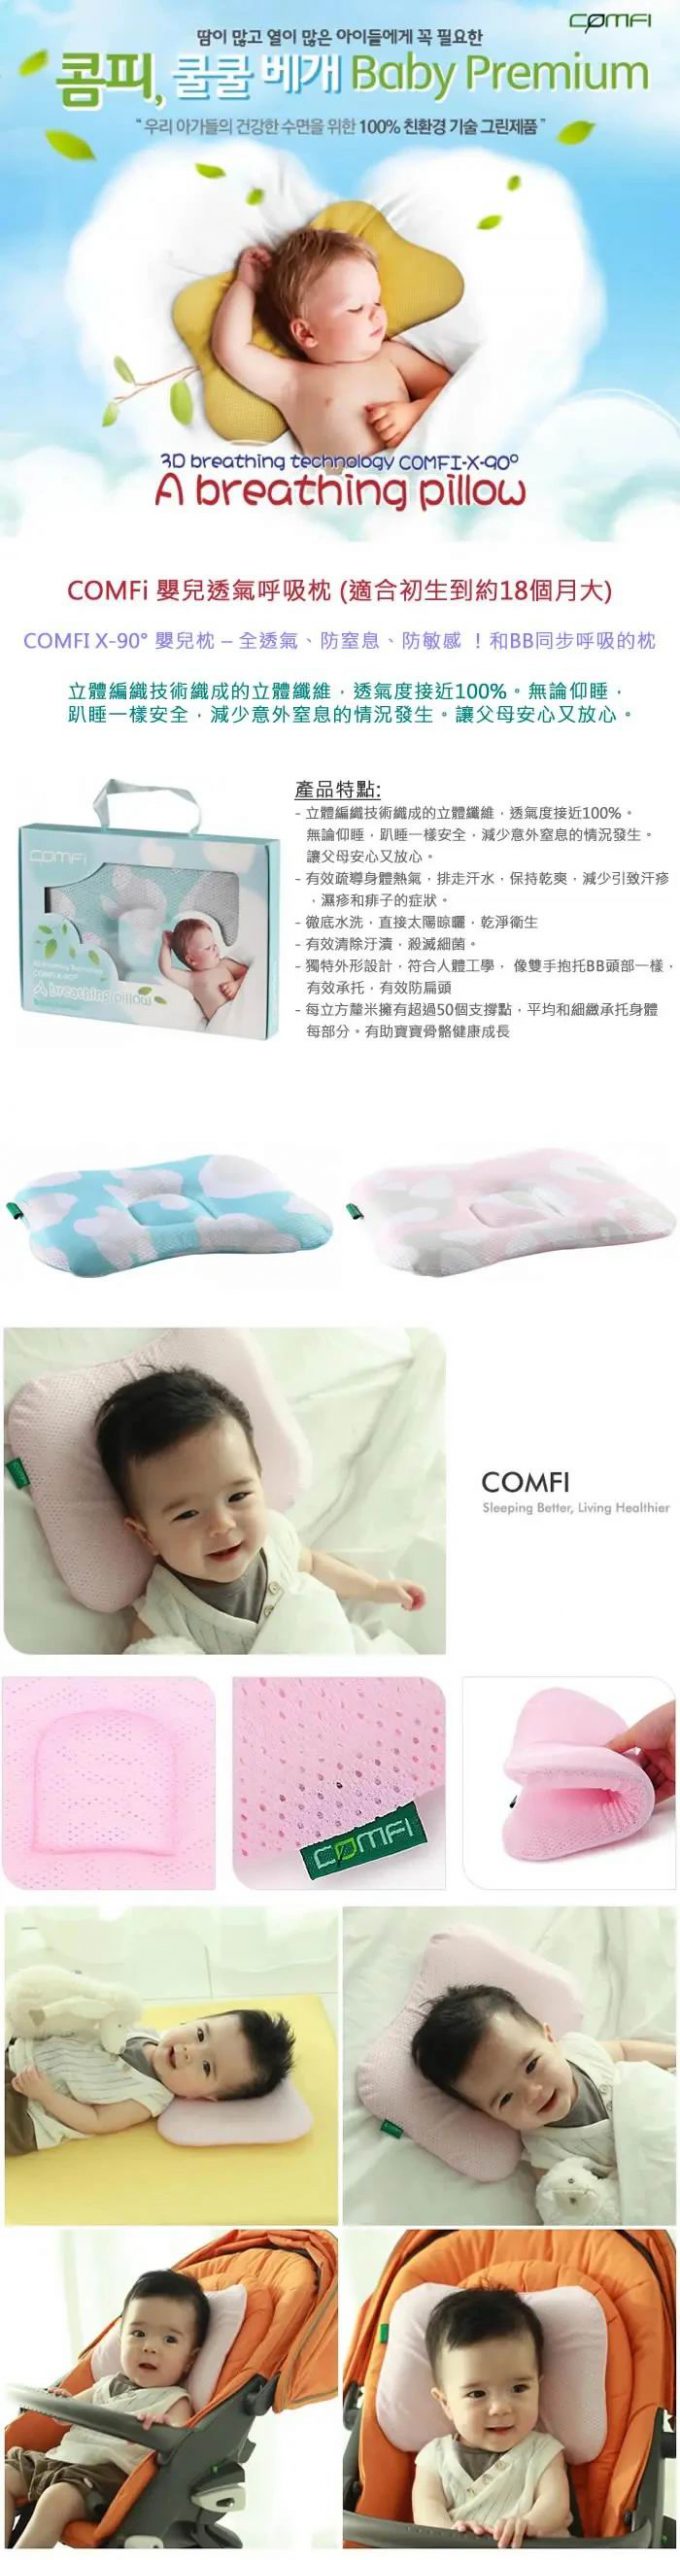 Comfi 嬰兒呼吸定型枕 0-18m